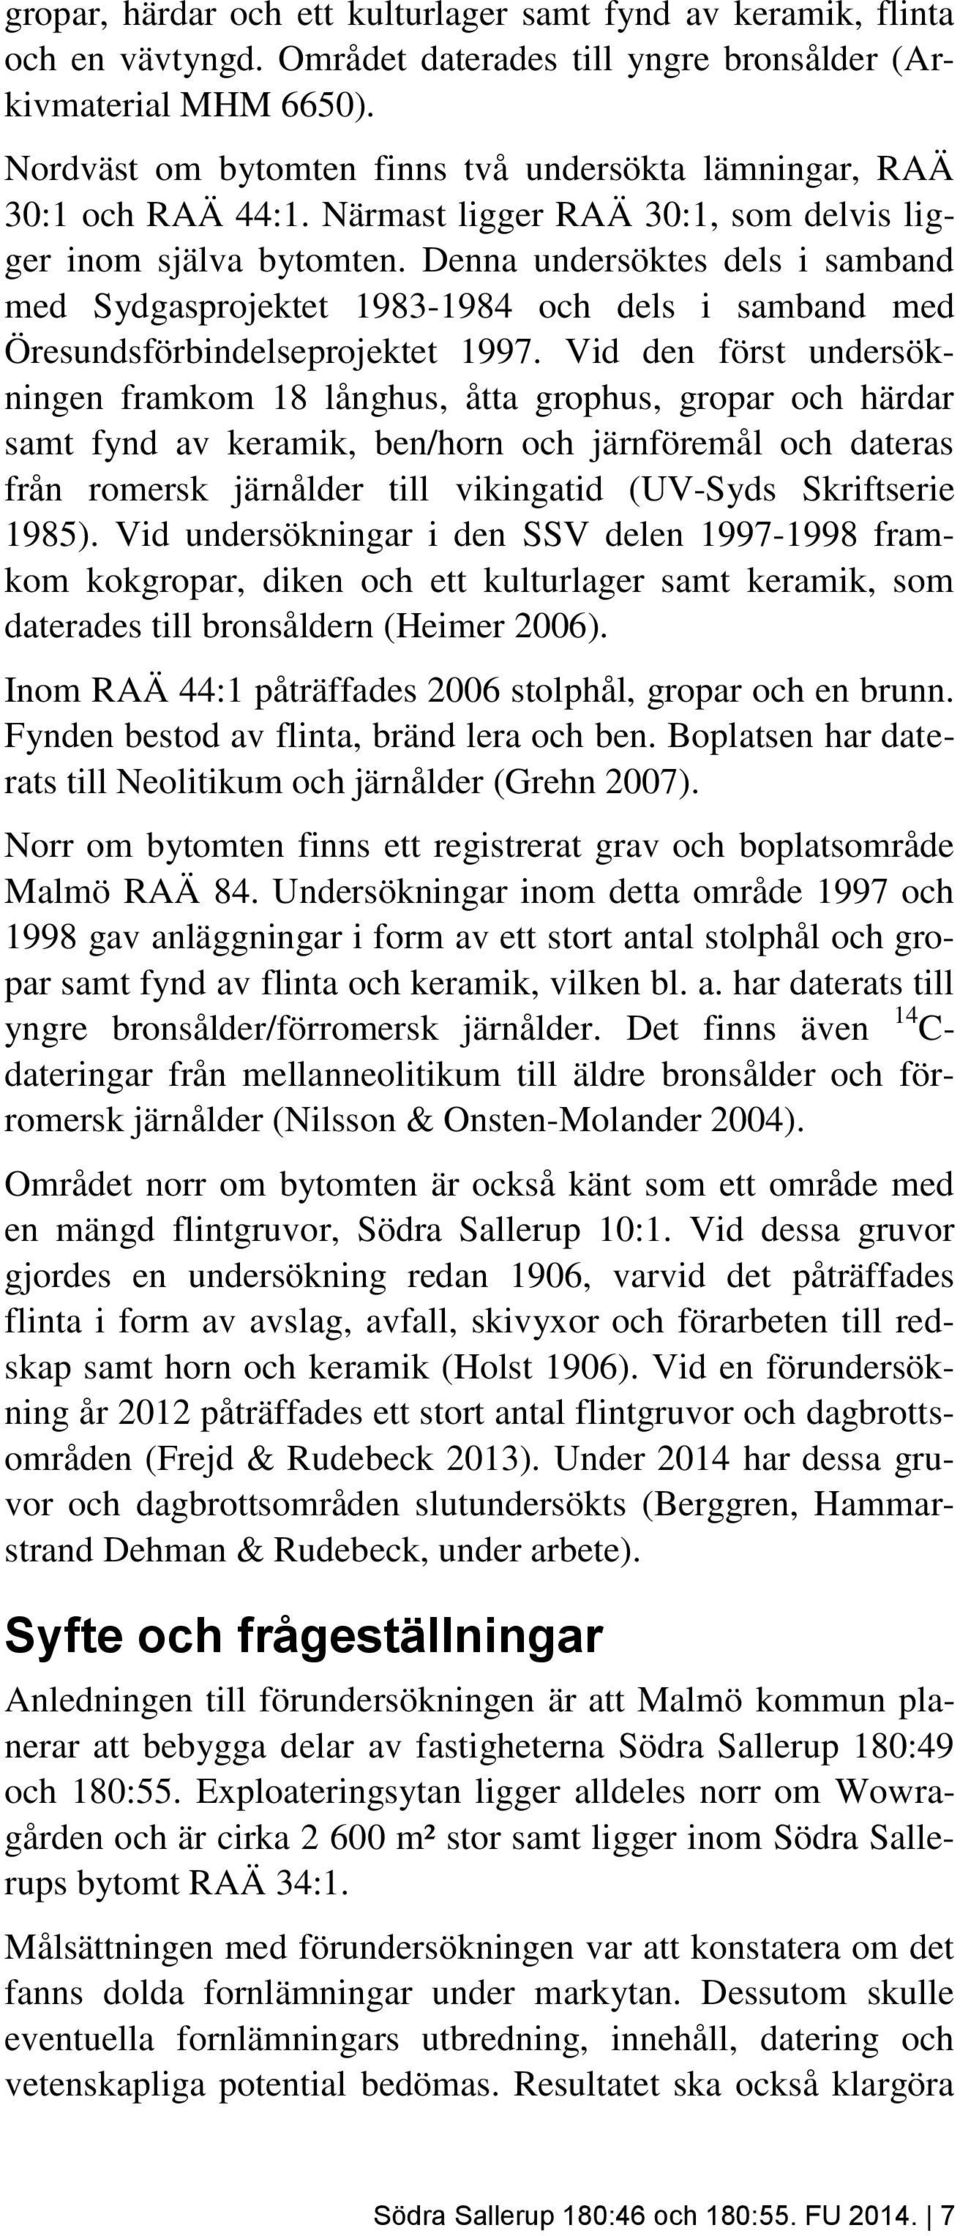 Denna undersöktes dels i samband med Sydgasprojektet 1983-1984 och dels i samband med Öresundsförbindelseprojektet 1997.